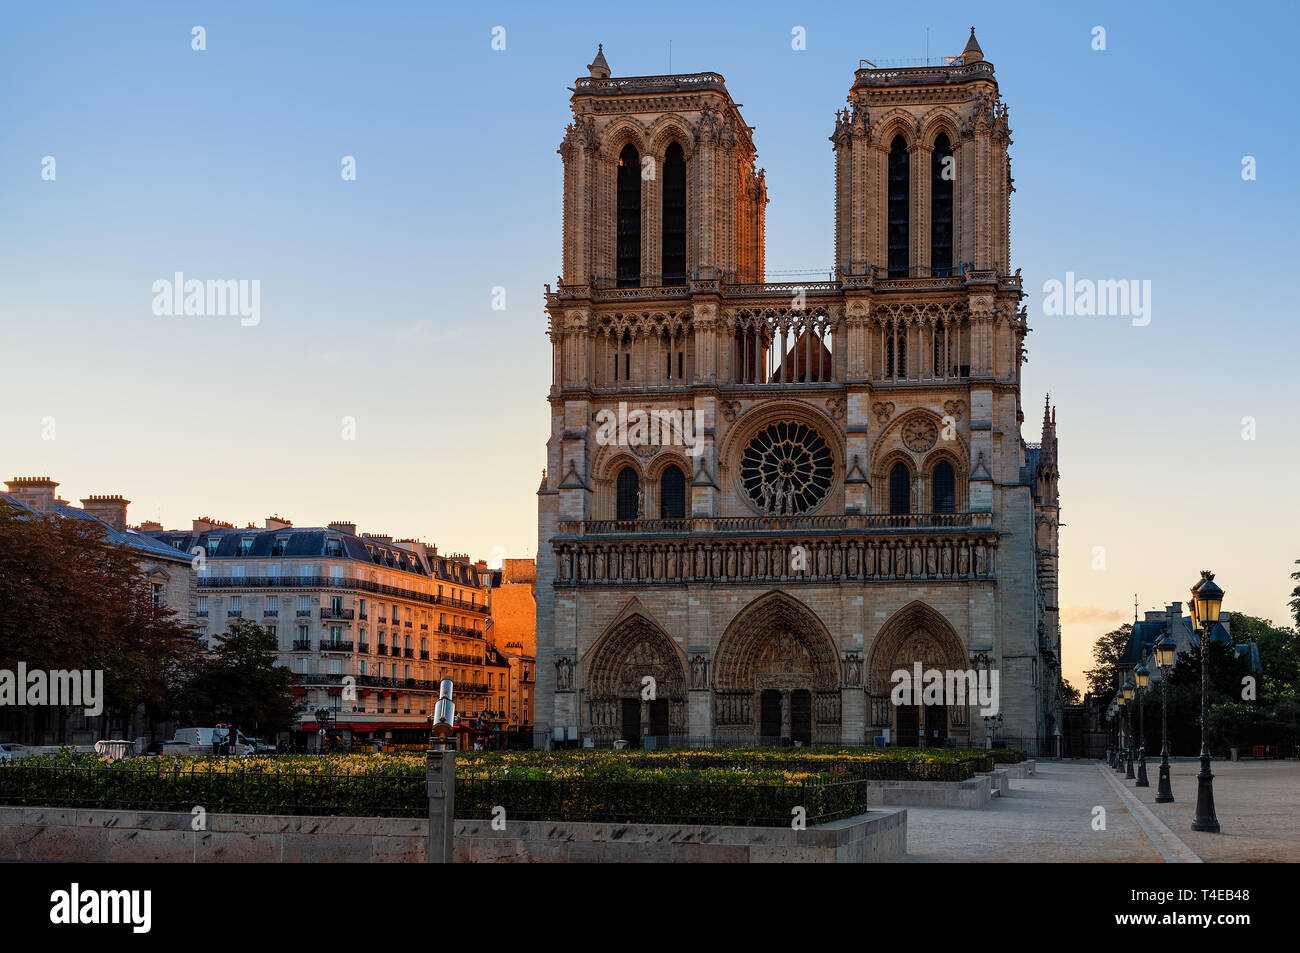 Facade of famous Notre-Dame de Paris cathedral in Paris, France. Stock Photo